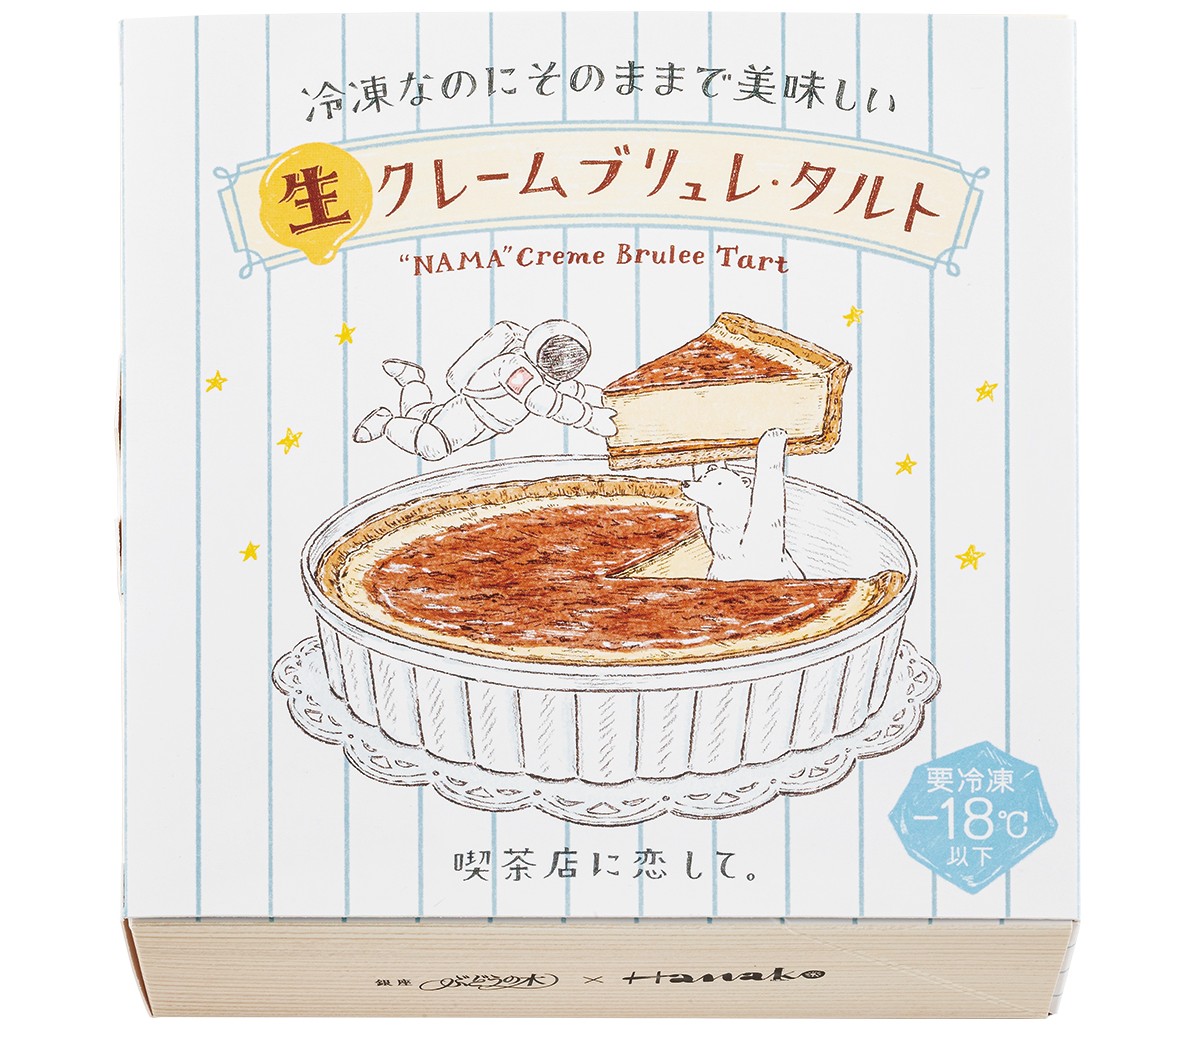 銀座ぶどうの木×Hanakoコラボケーキは絶品クレームブリュレ・タルト